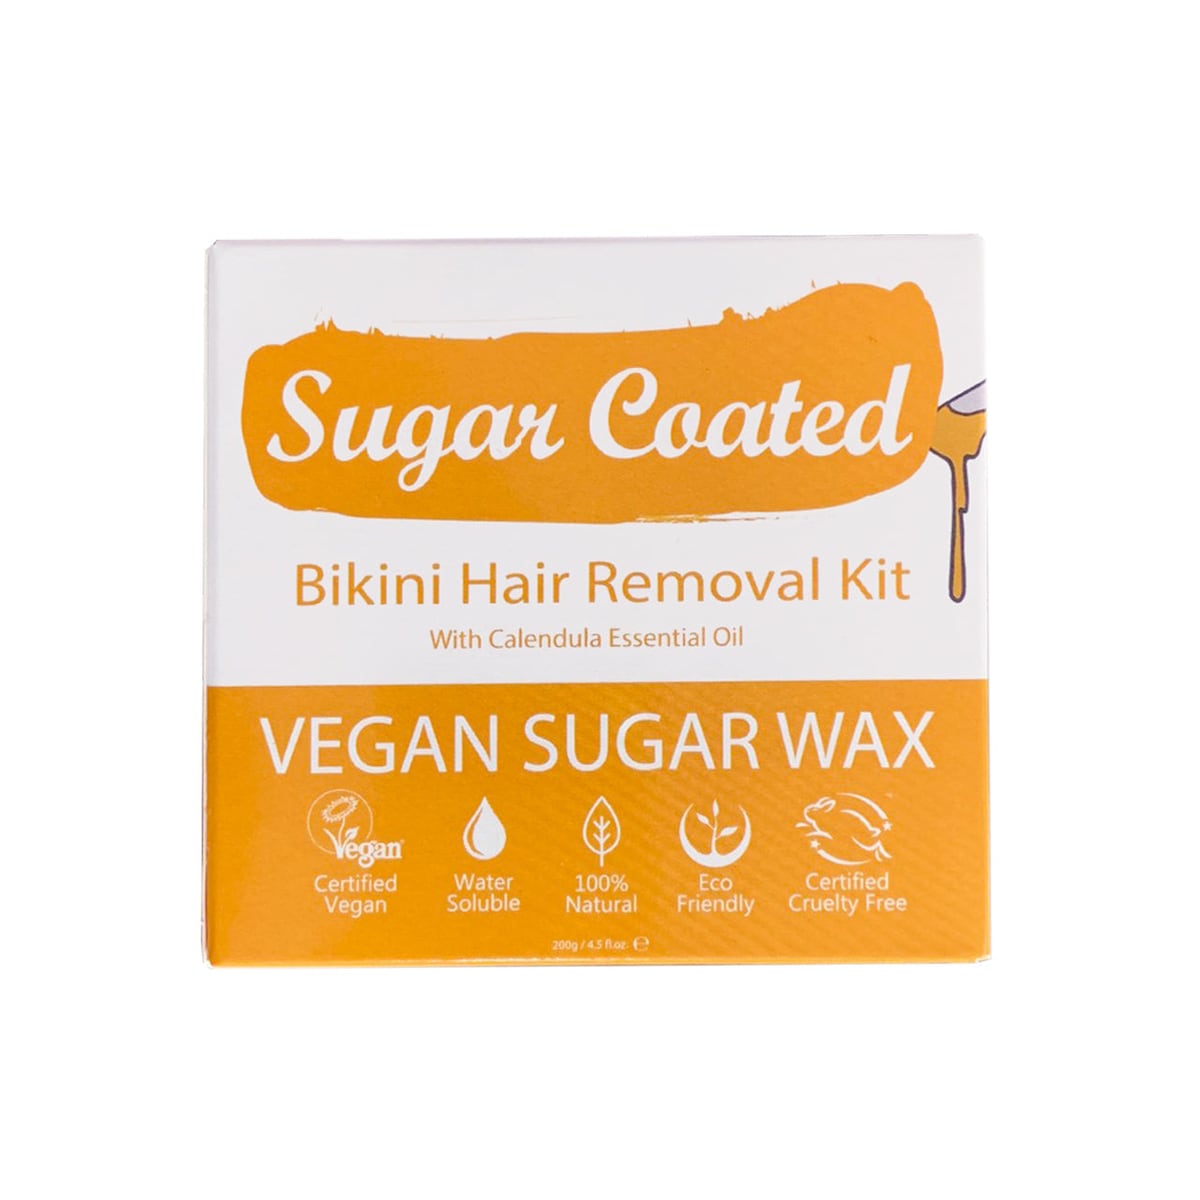 Sugar Coated Bikini Hair Removal Kit 200g